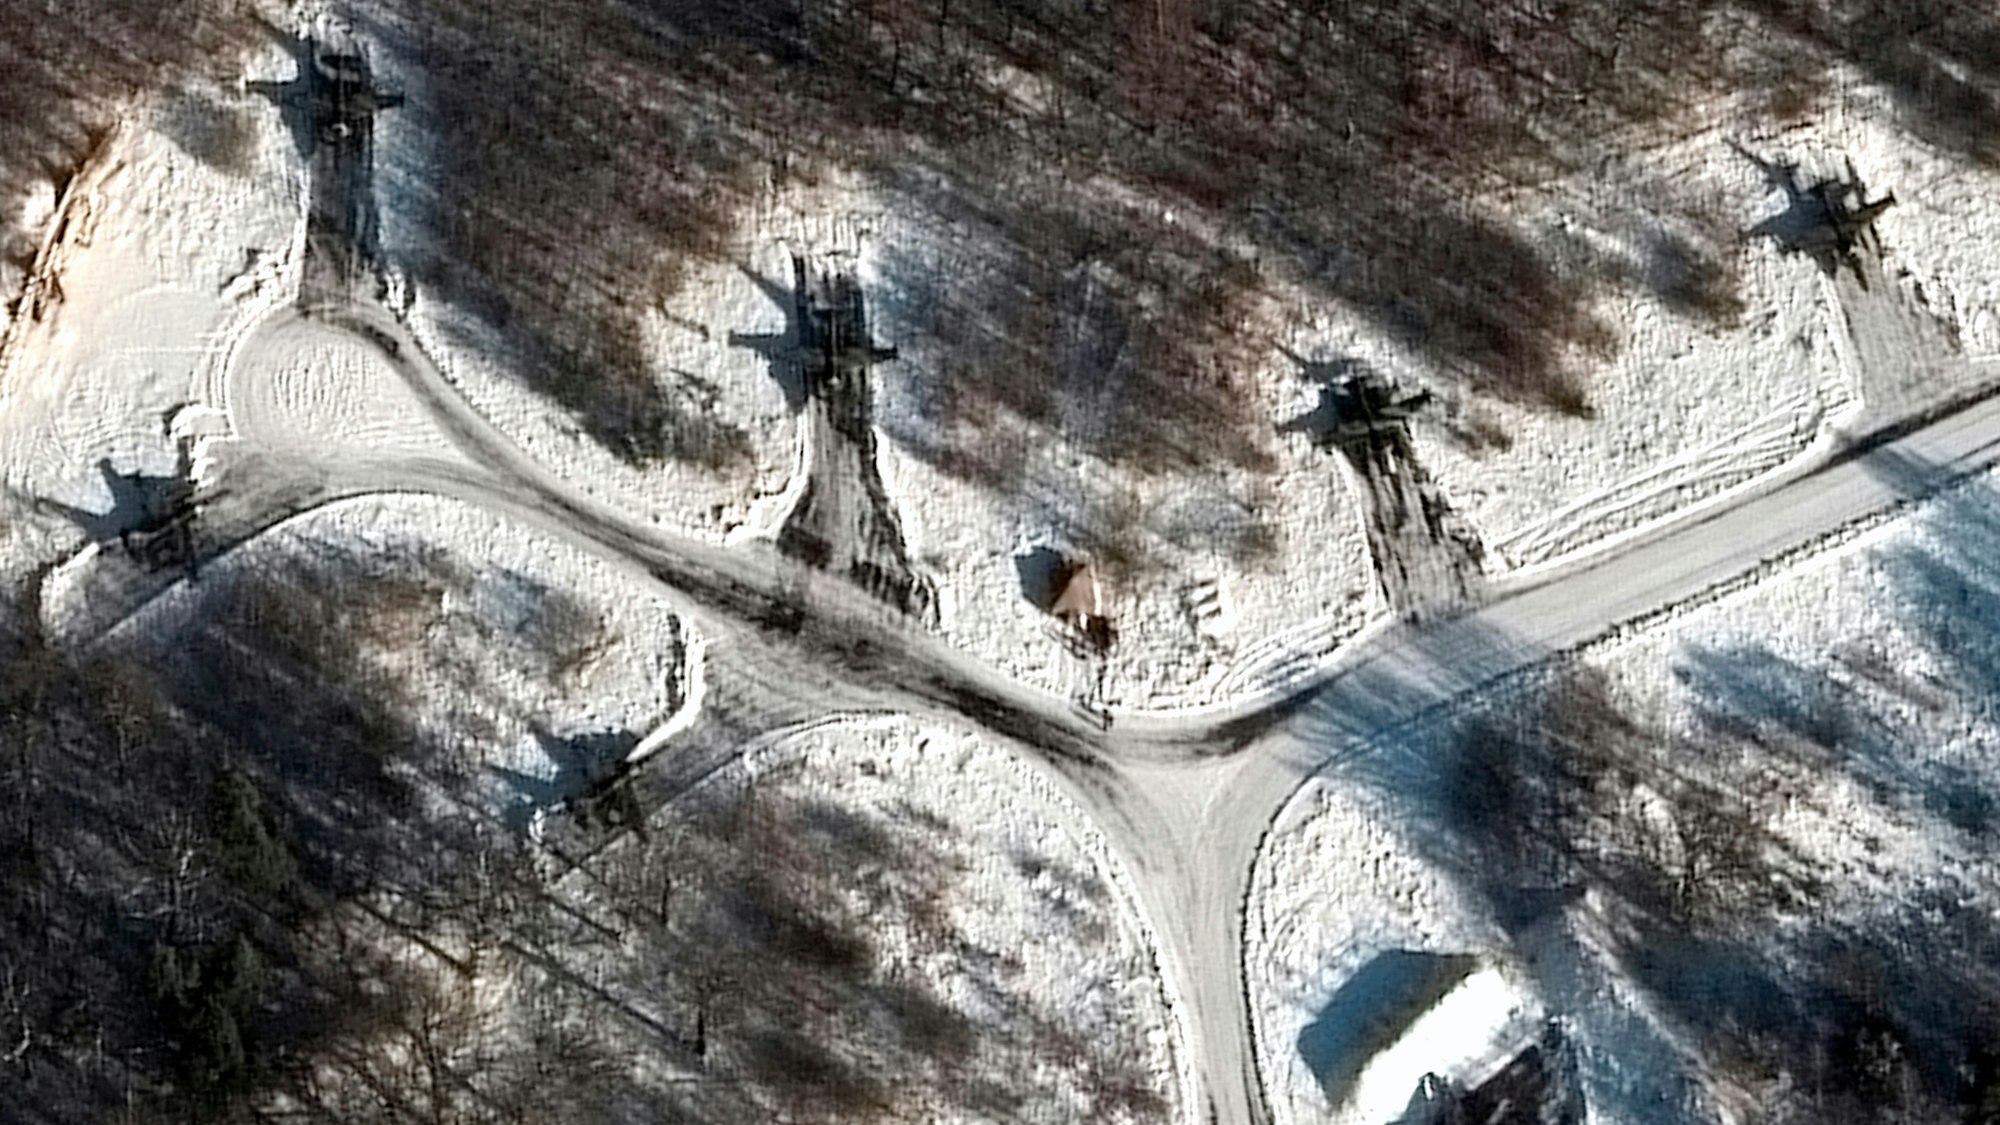 Dieses von Maxar Technologies zur Verfügung gestellte Satellitenbild zeigt das Ausmaß des Manövers, hier ist ein Sukhoi Su-25 Bodenangriffsflugzeug auf dem Flugplatz Luninets in Belarus zu sehen. Russland hat Truppen aus Sibirien und dem Fernen Osten für umfassende gemeinsame Übungen nach Belarus verlegt. Der Westen befürchtet, Russland plant einen Angriff auf die Ukraine vom Norden aus.